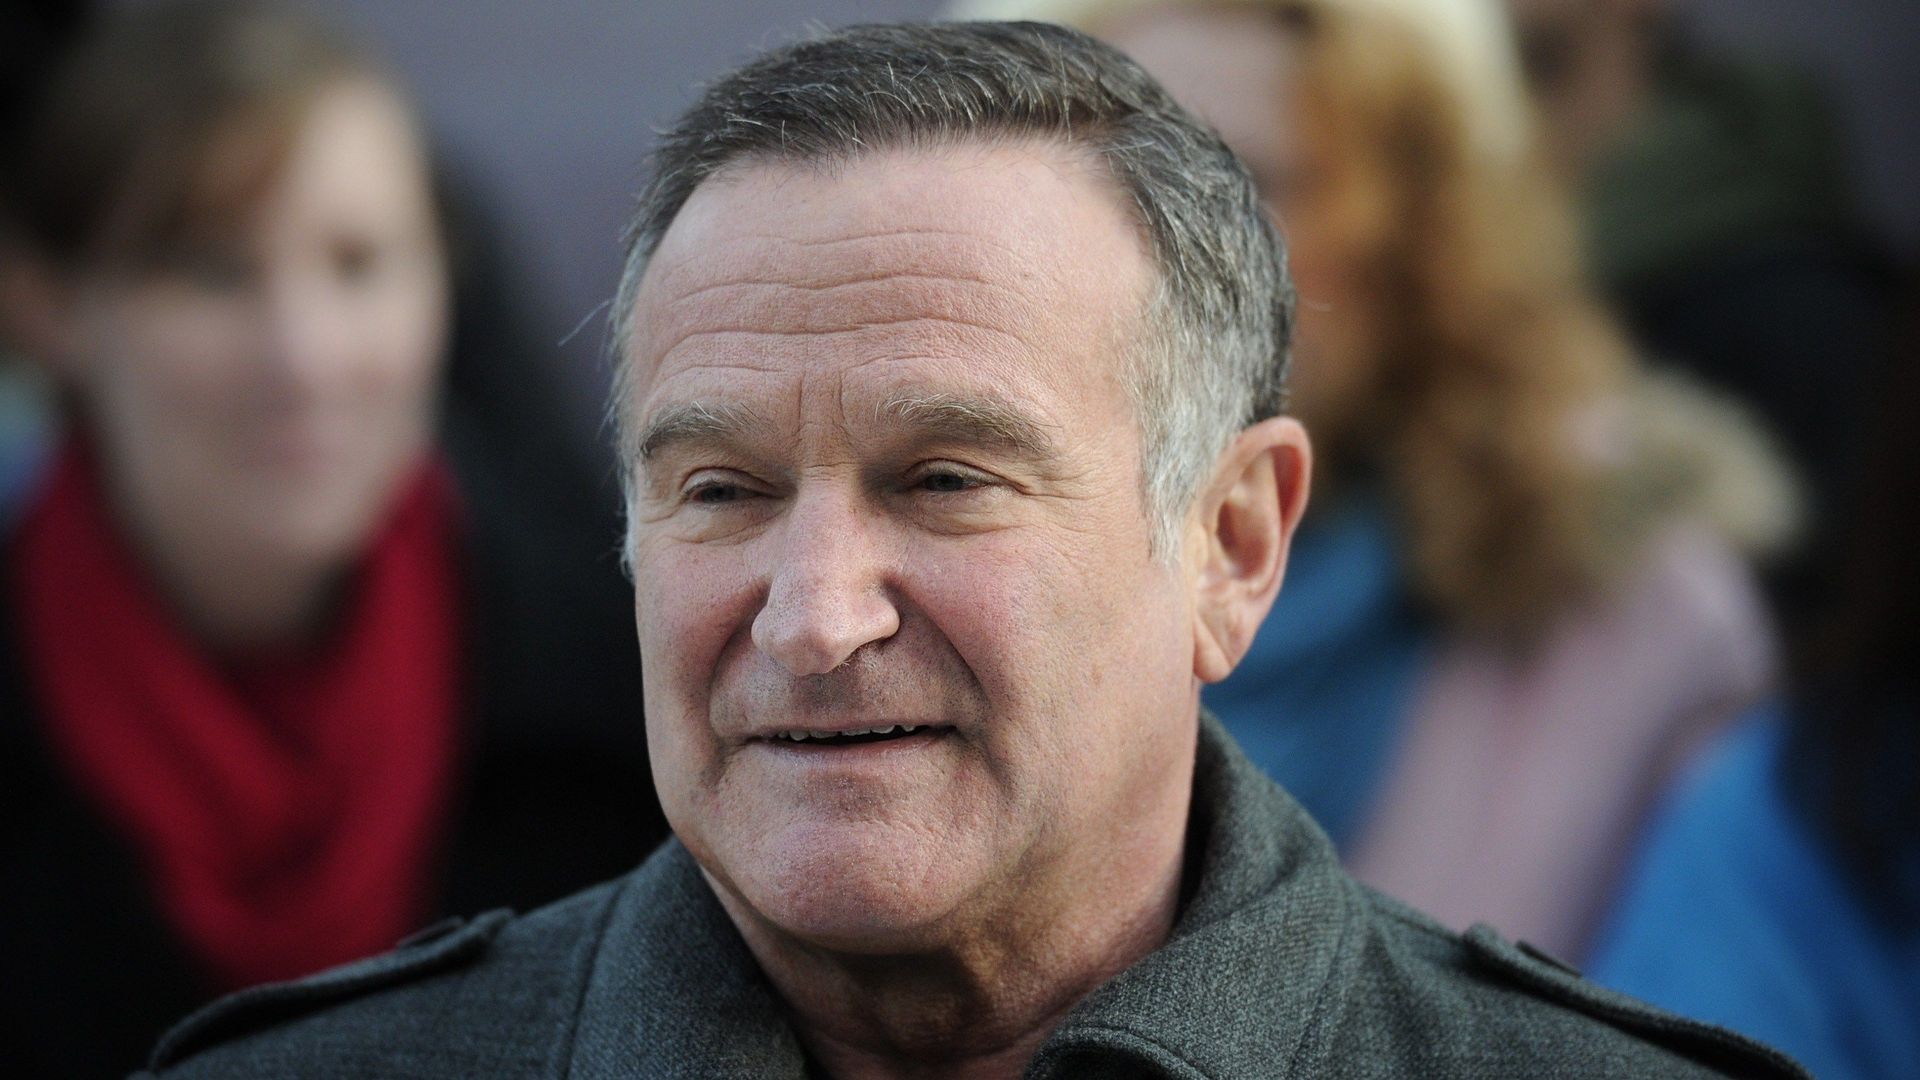 L'acteur américain Robin Williams est mort et semble s'être suicidé